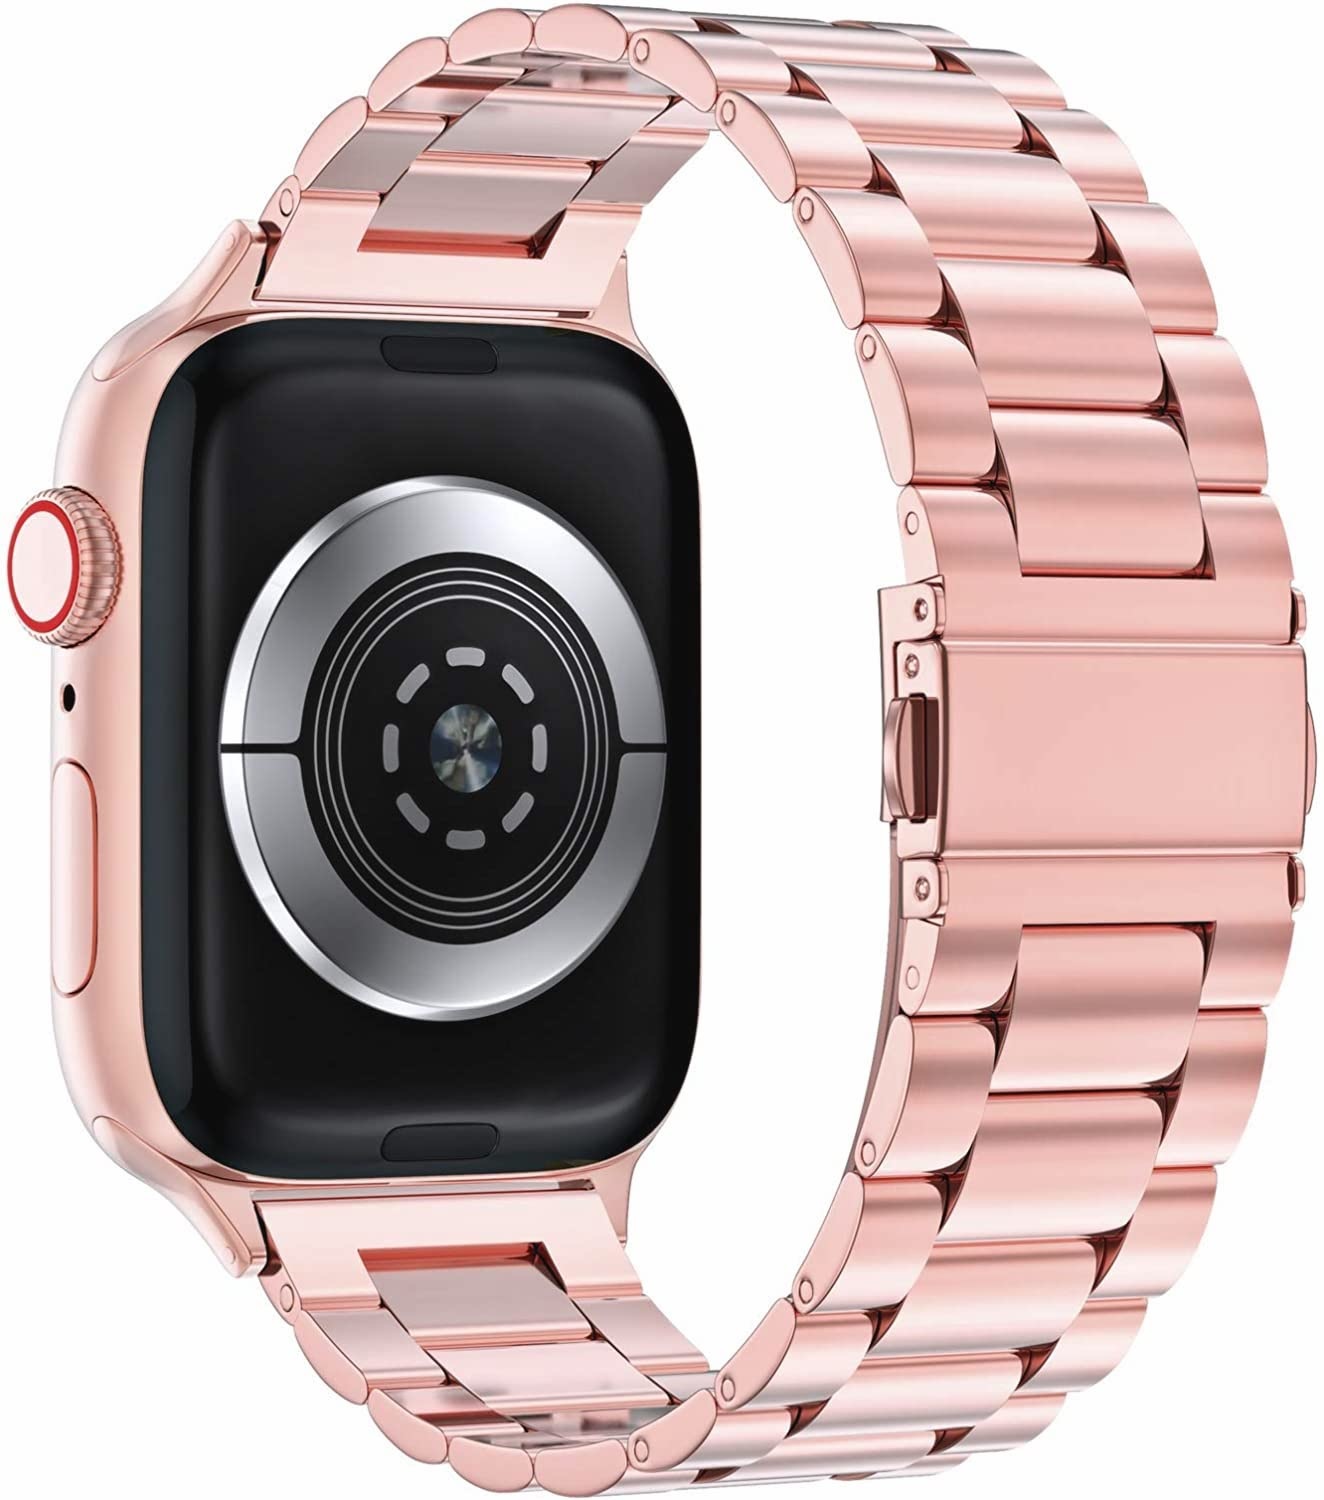  Apple Watch gyöngyök Acél link szalag - rózsaszín piros